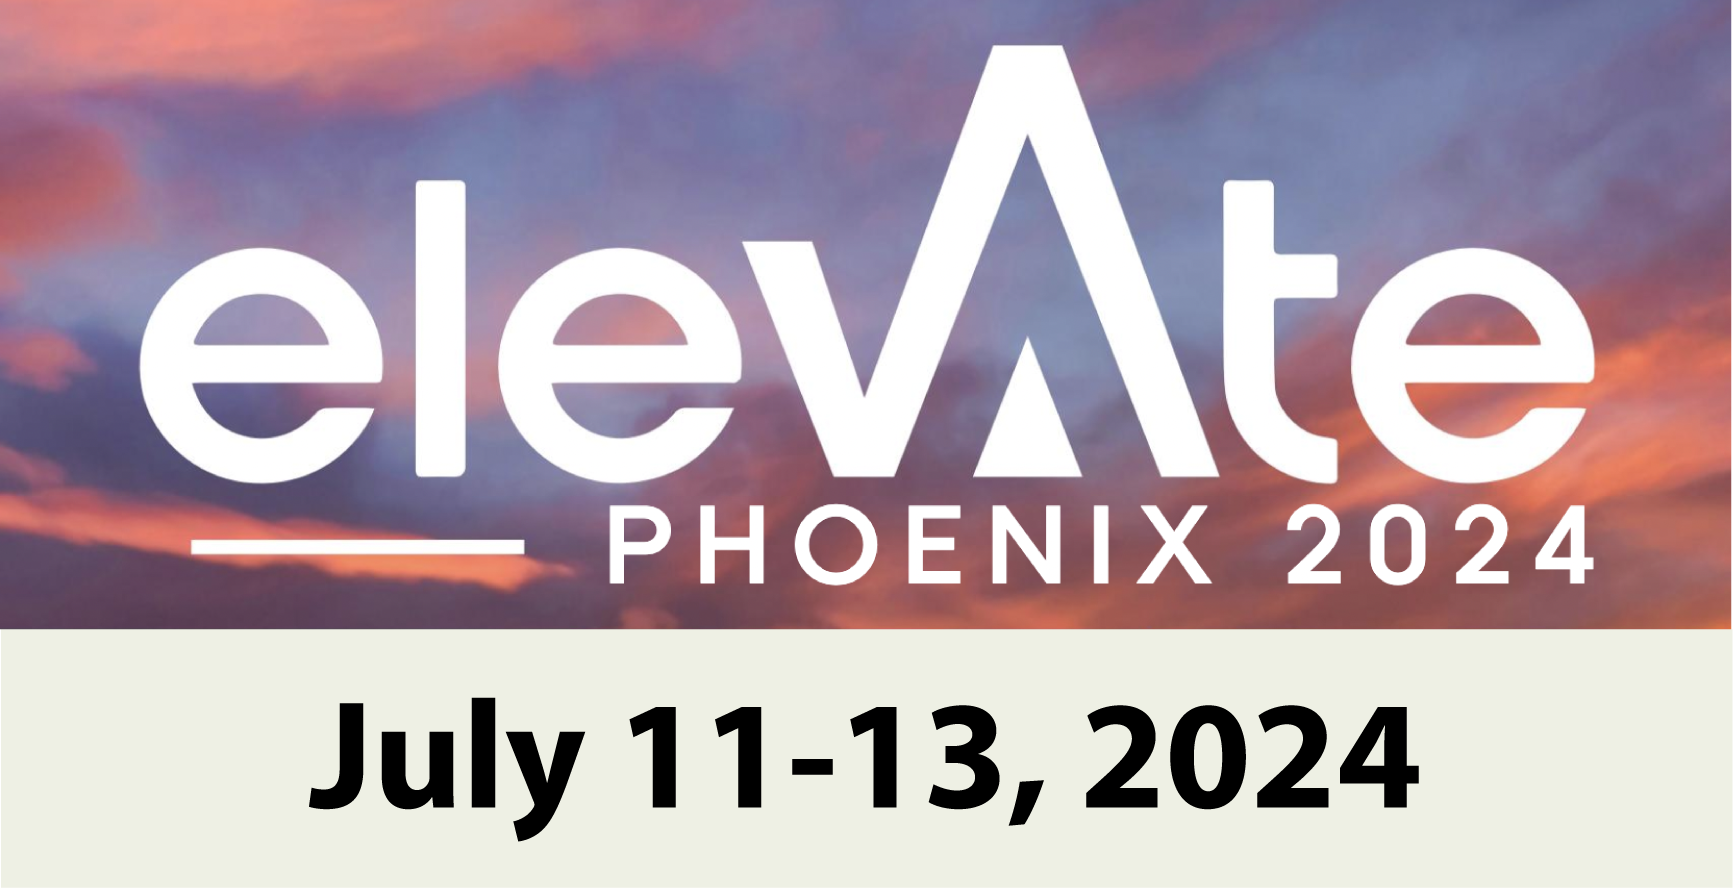 2024 Elevate Phoenix